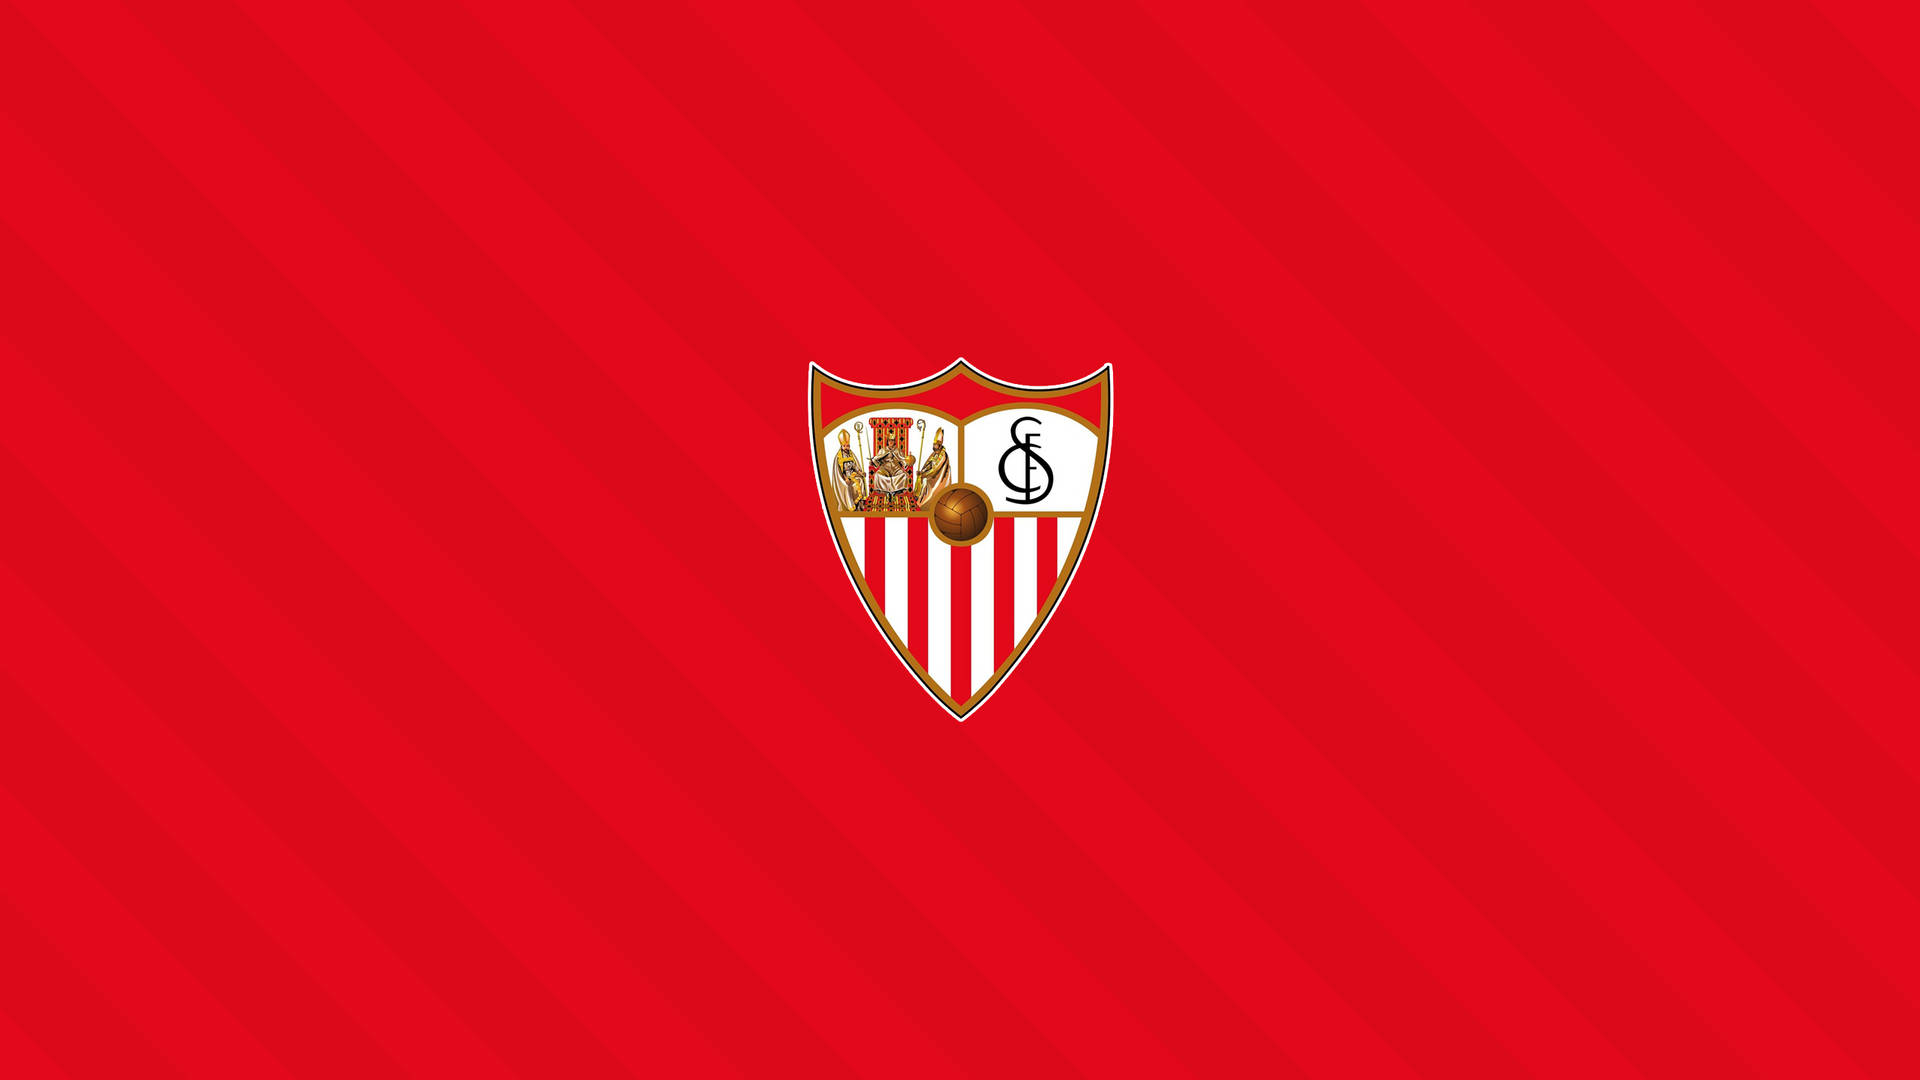 Sevillafc-logotypen I Minimalistisk Rött. Wallpaper